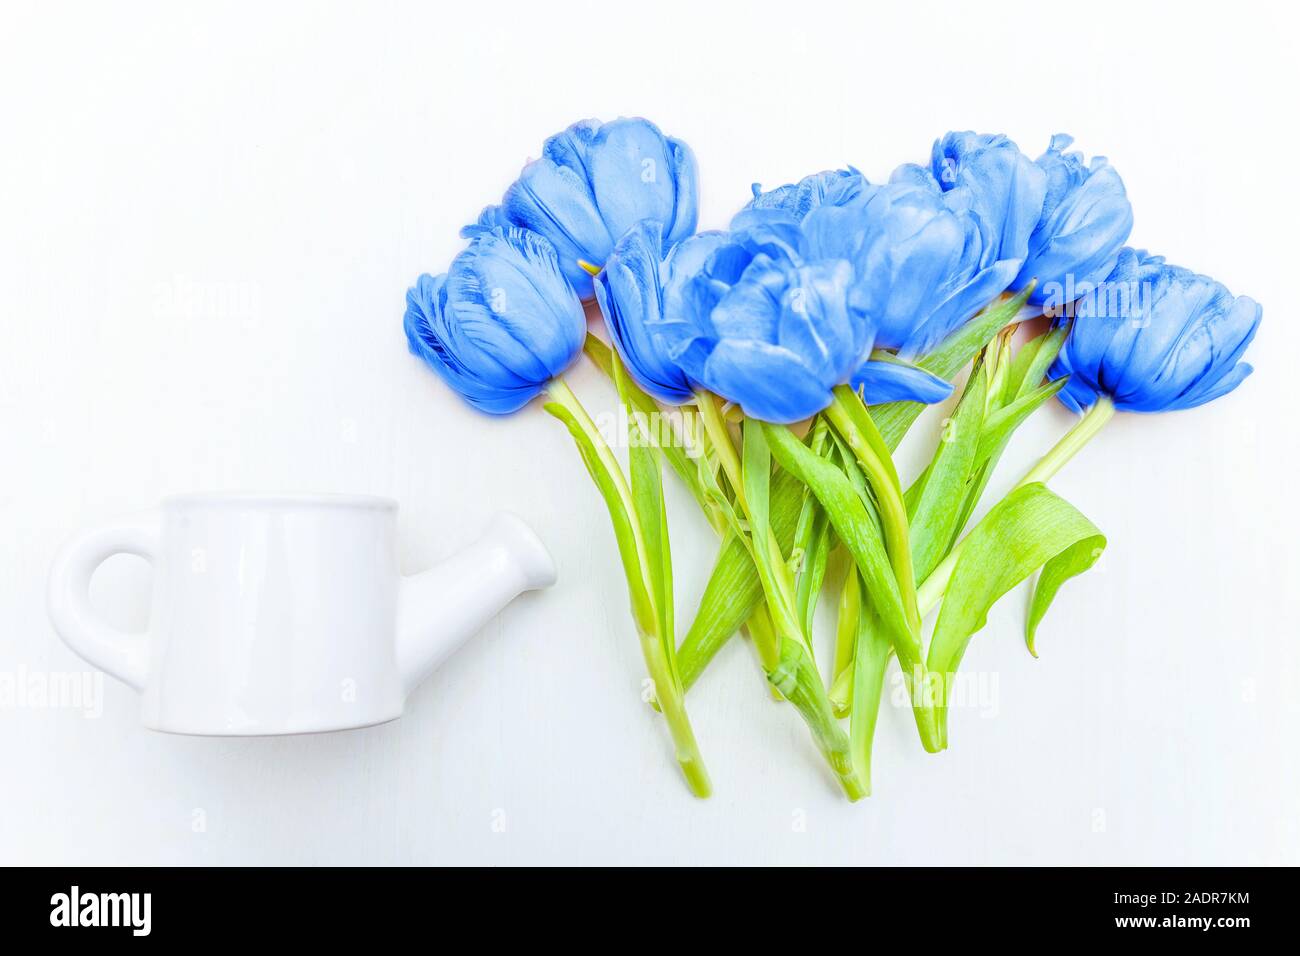 Bouquet de tulipes fleurs fraîches colorées de couleur très tendance de l'année 2020 classique bleu sur fond blanc. Couleur 19-4052 Macro lumineuse. Télévision jeter top voir c Banque D'Images